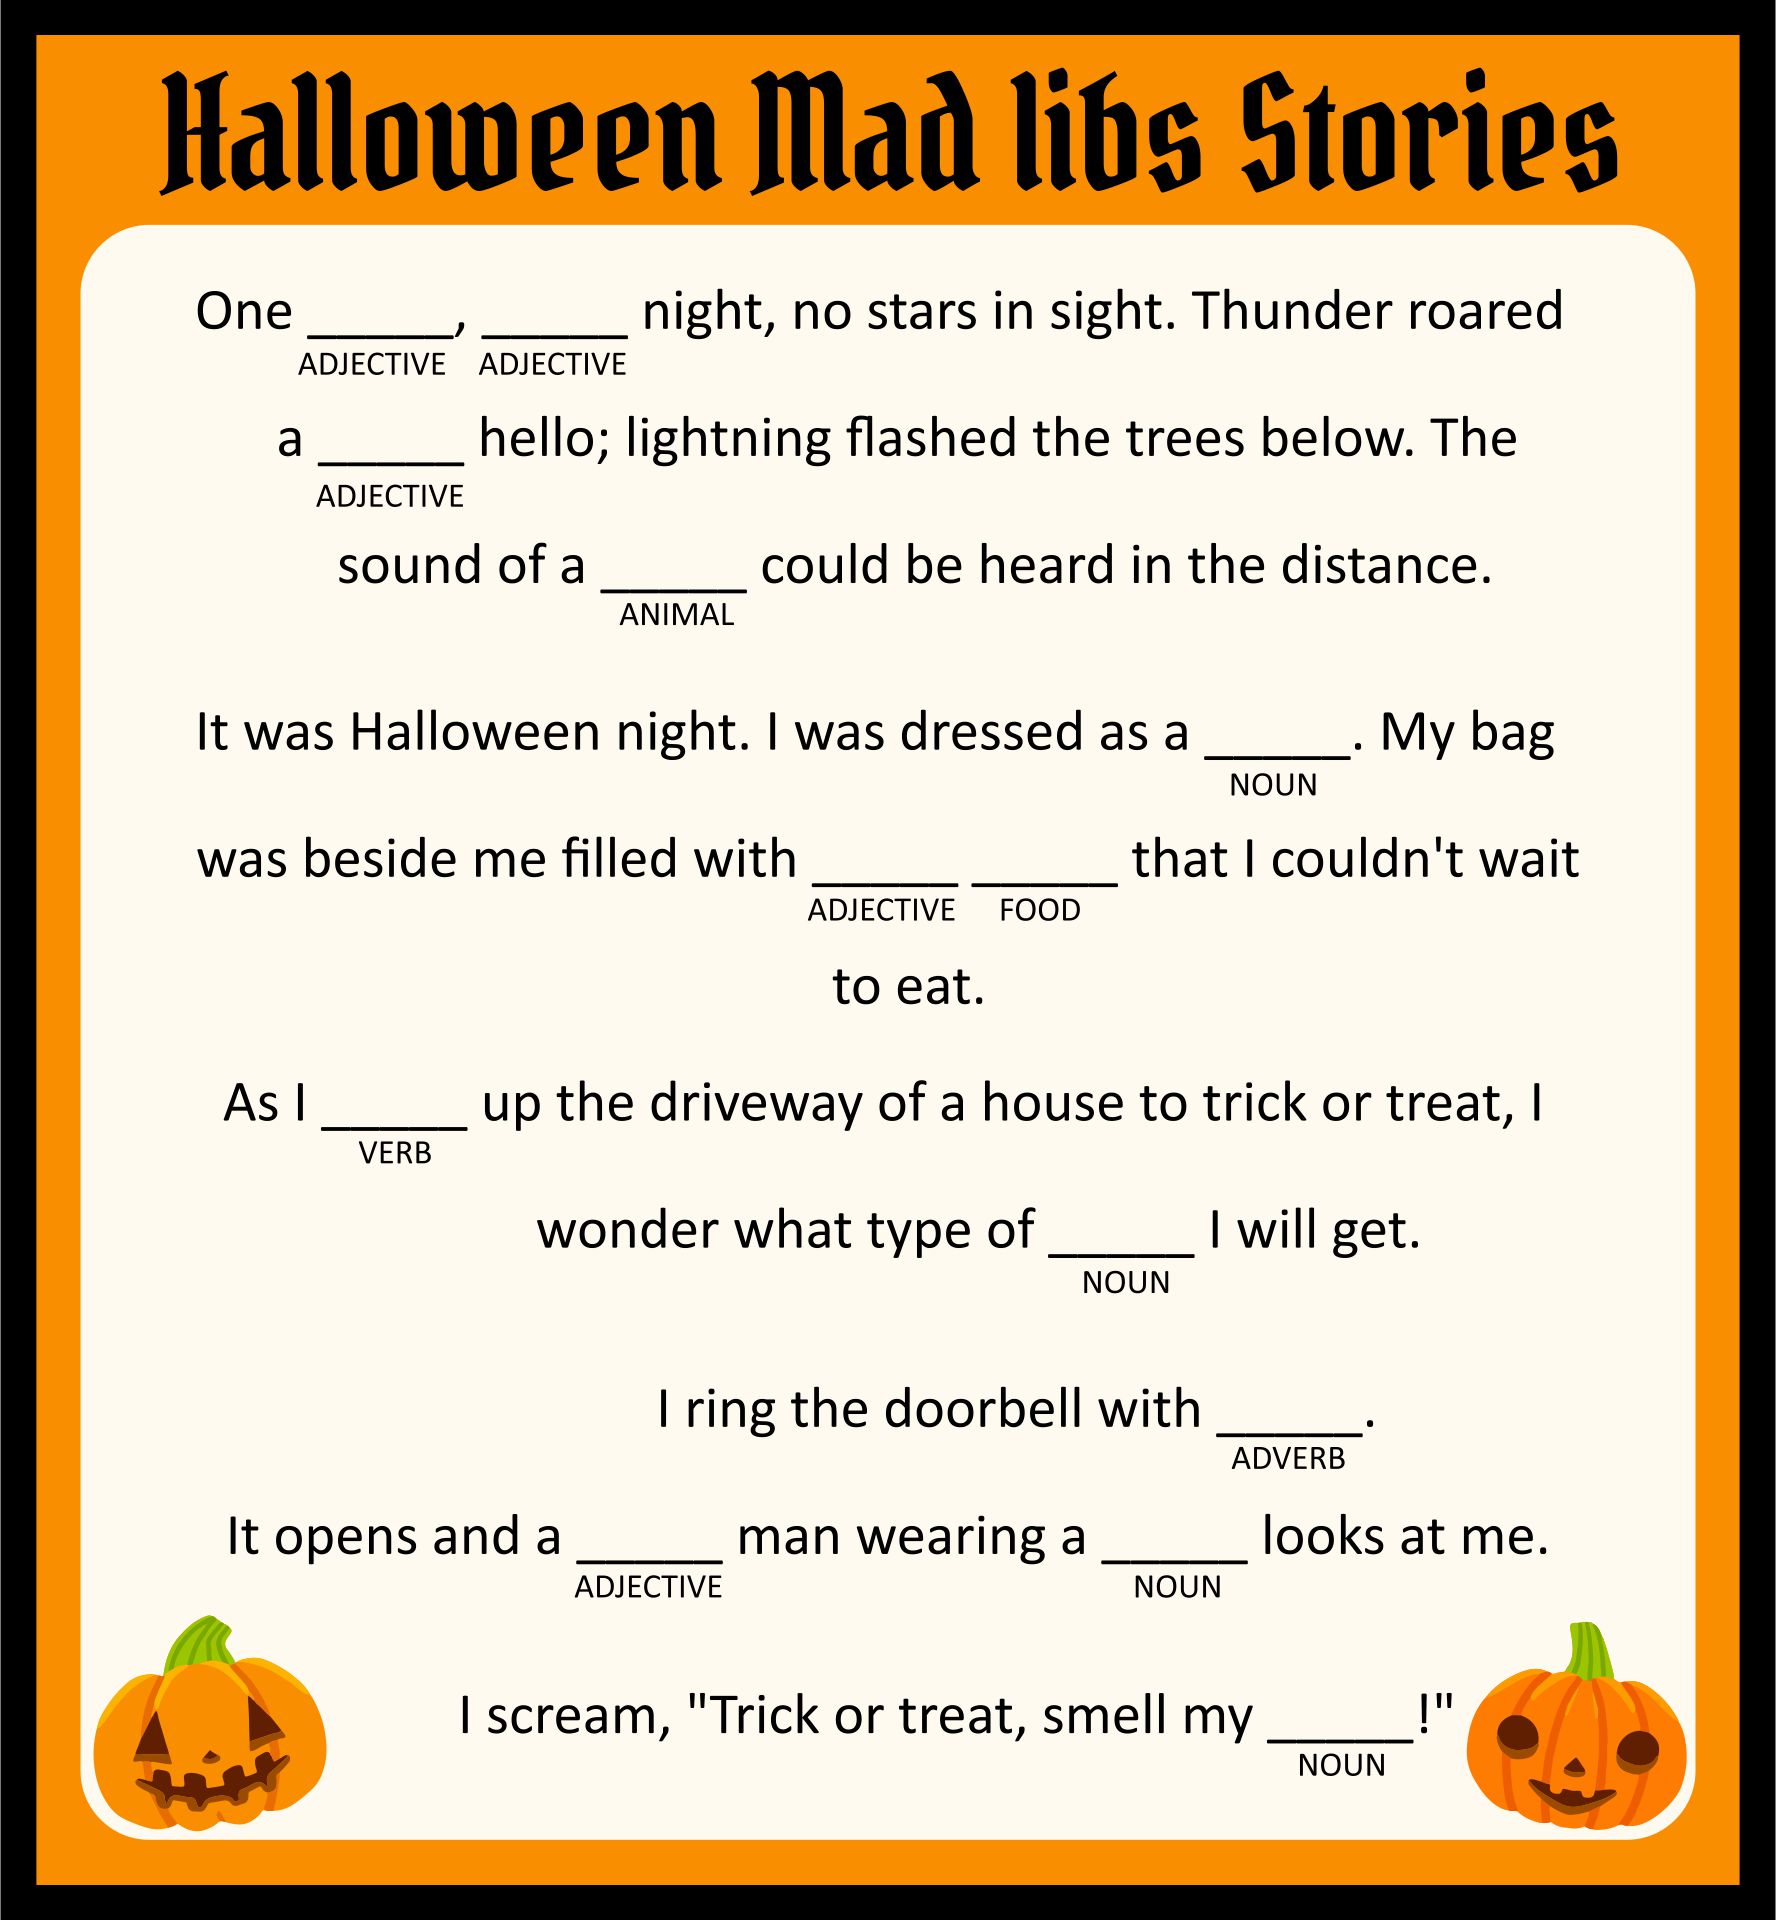 Free Printable Adult Halloween Mad Libs_621448